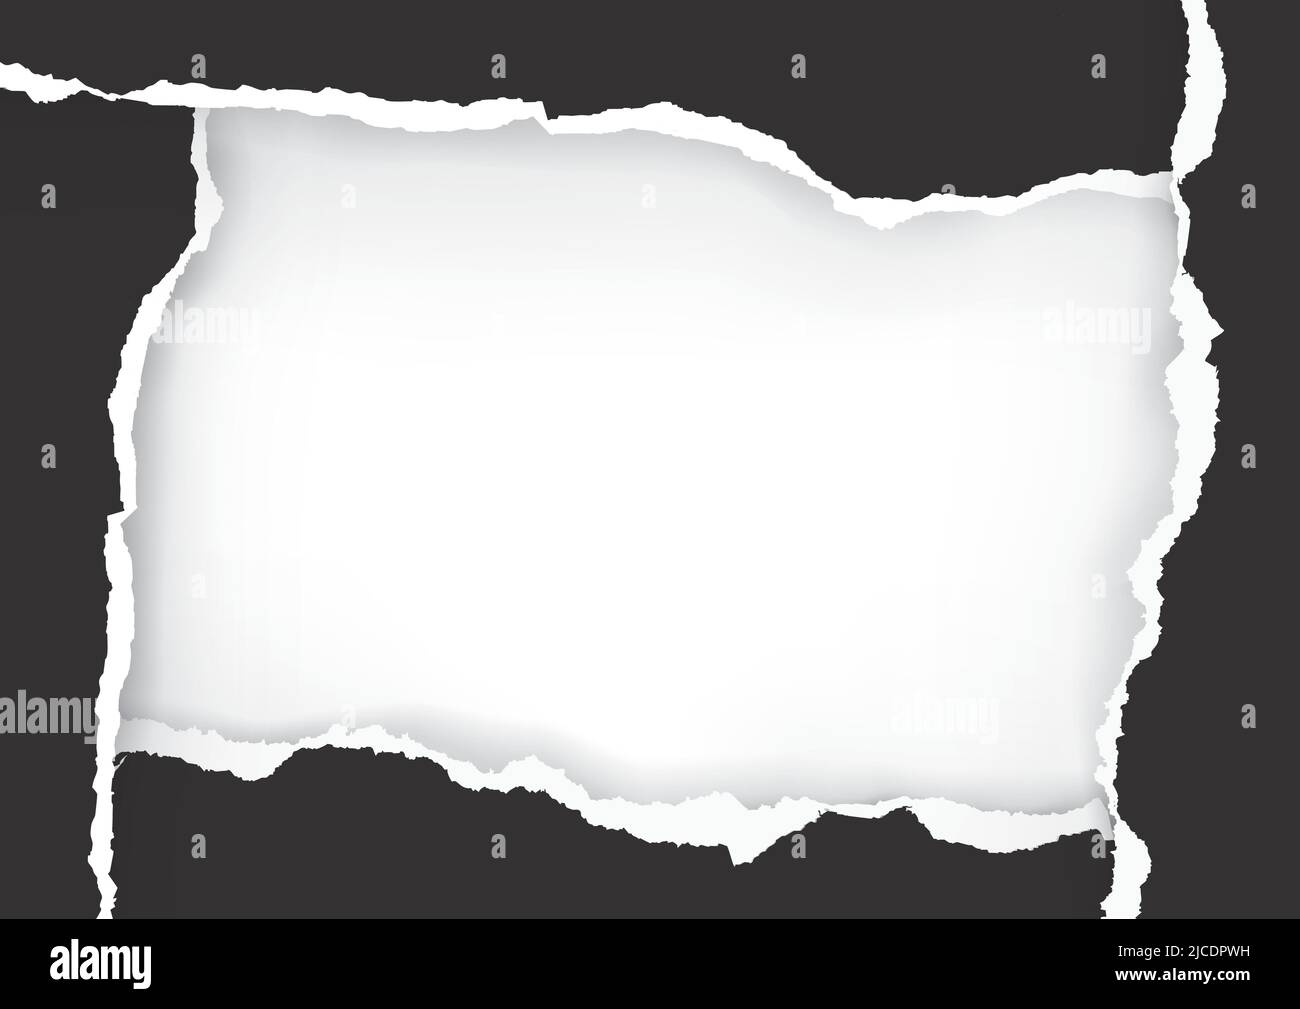 Schwarzer zerrissener Papierrahmen, Bannervorlage. Illustration eines schwarzen zerrissenen Papiers mit Platz für Ihr Bild oder Ihren Text. Vektor verfügbar. Stock Vektor